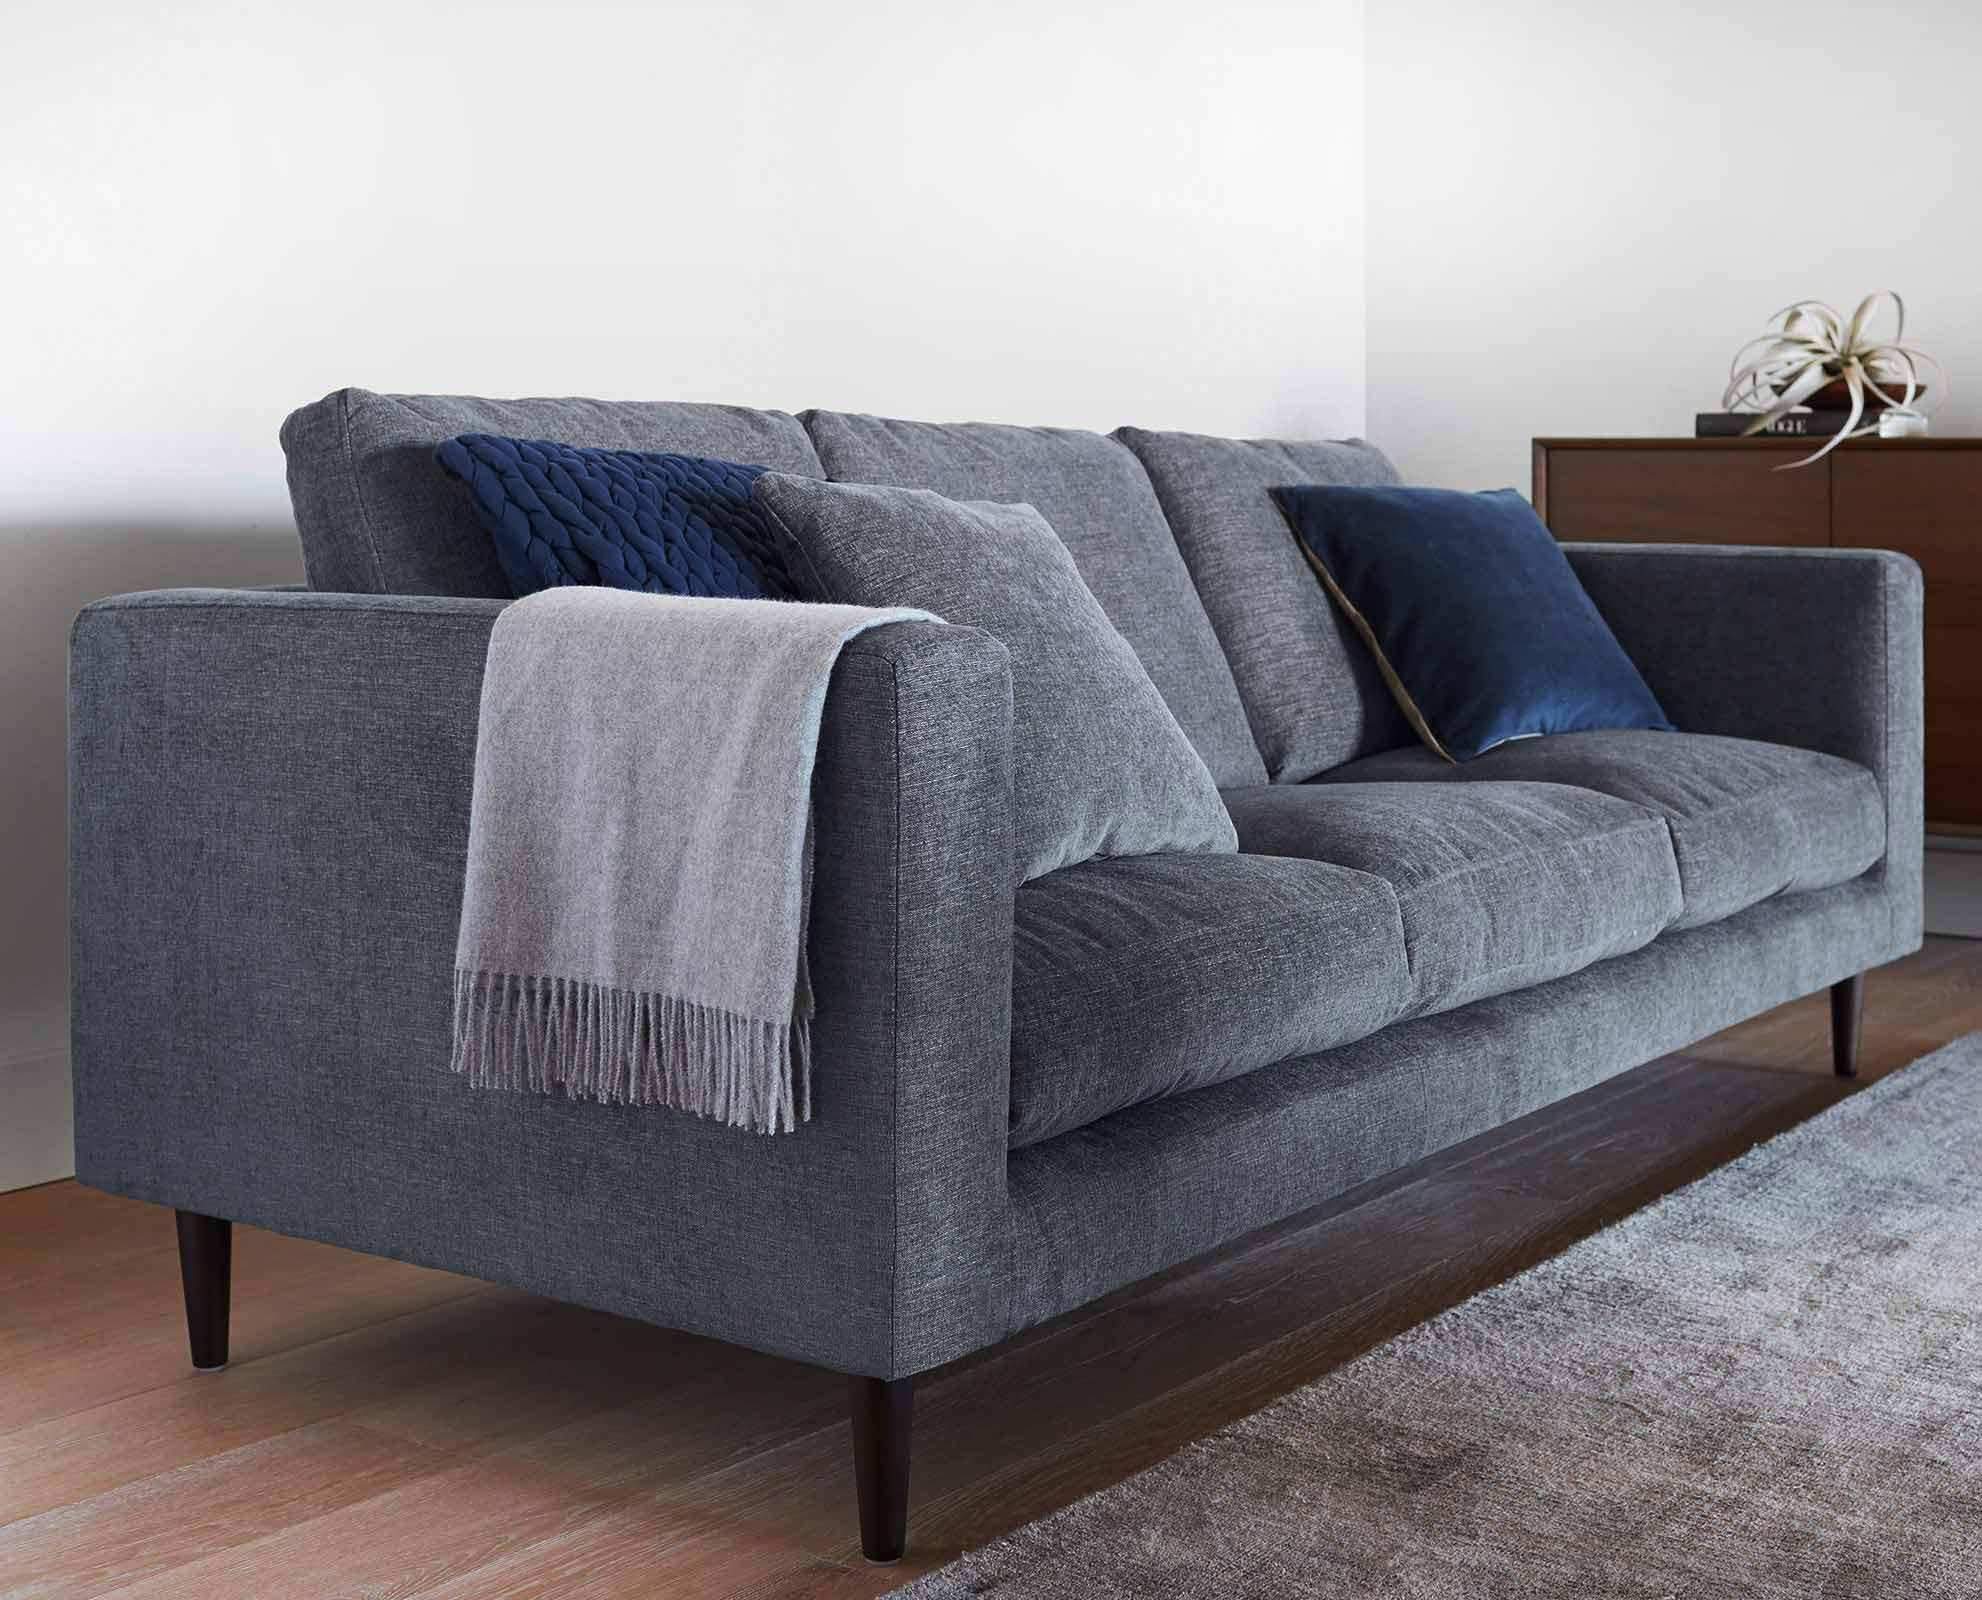 couchtisch modern gunstig reizend sofas gnstig fabulous sofas gnstig kaufen sale auf of couchtisch modern gunstig